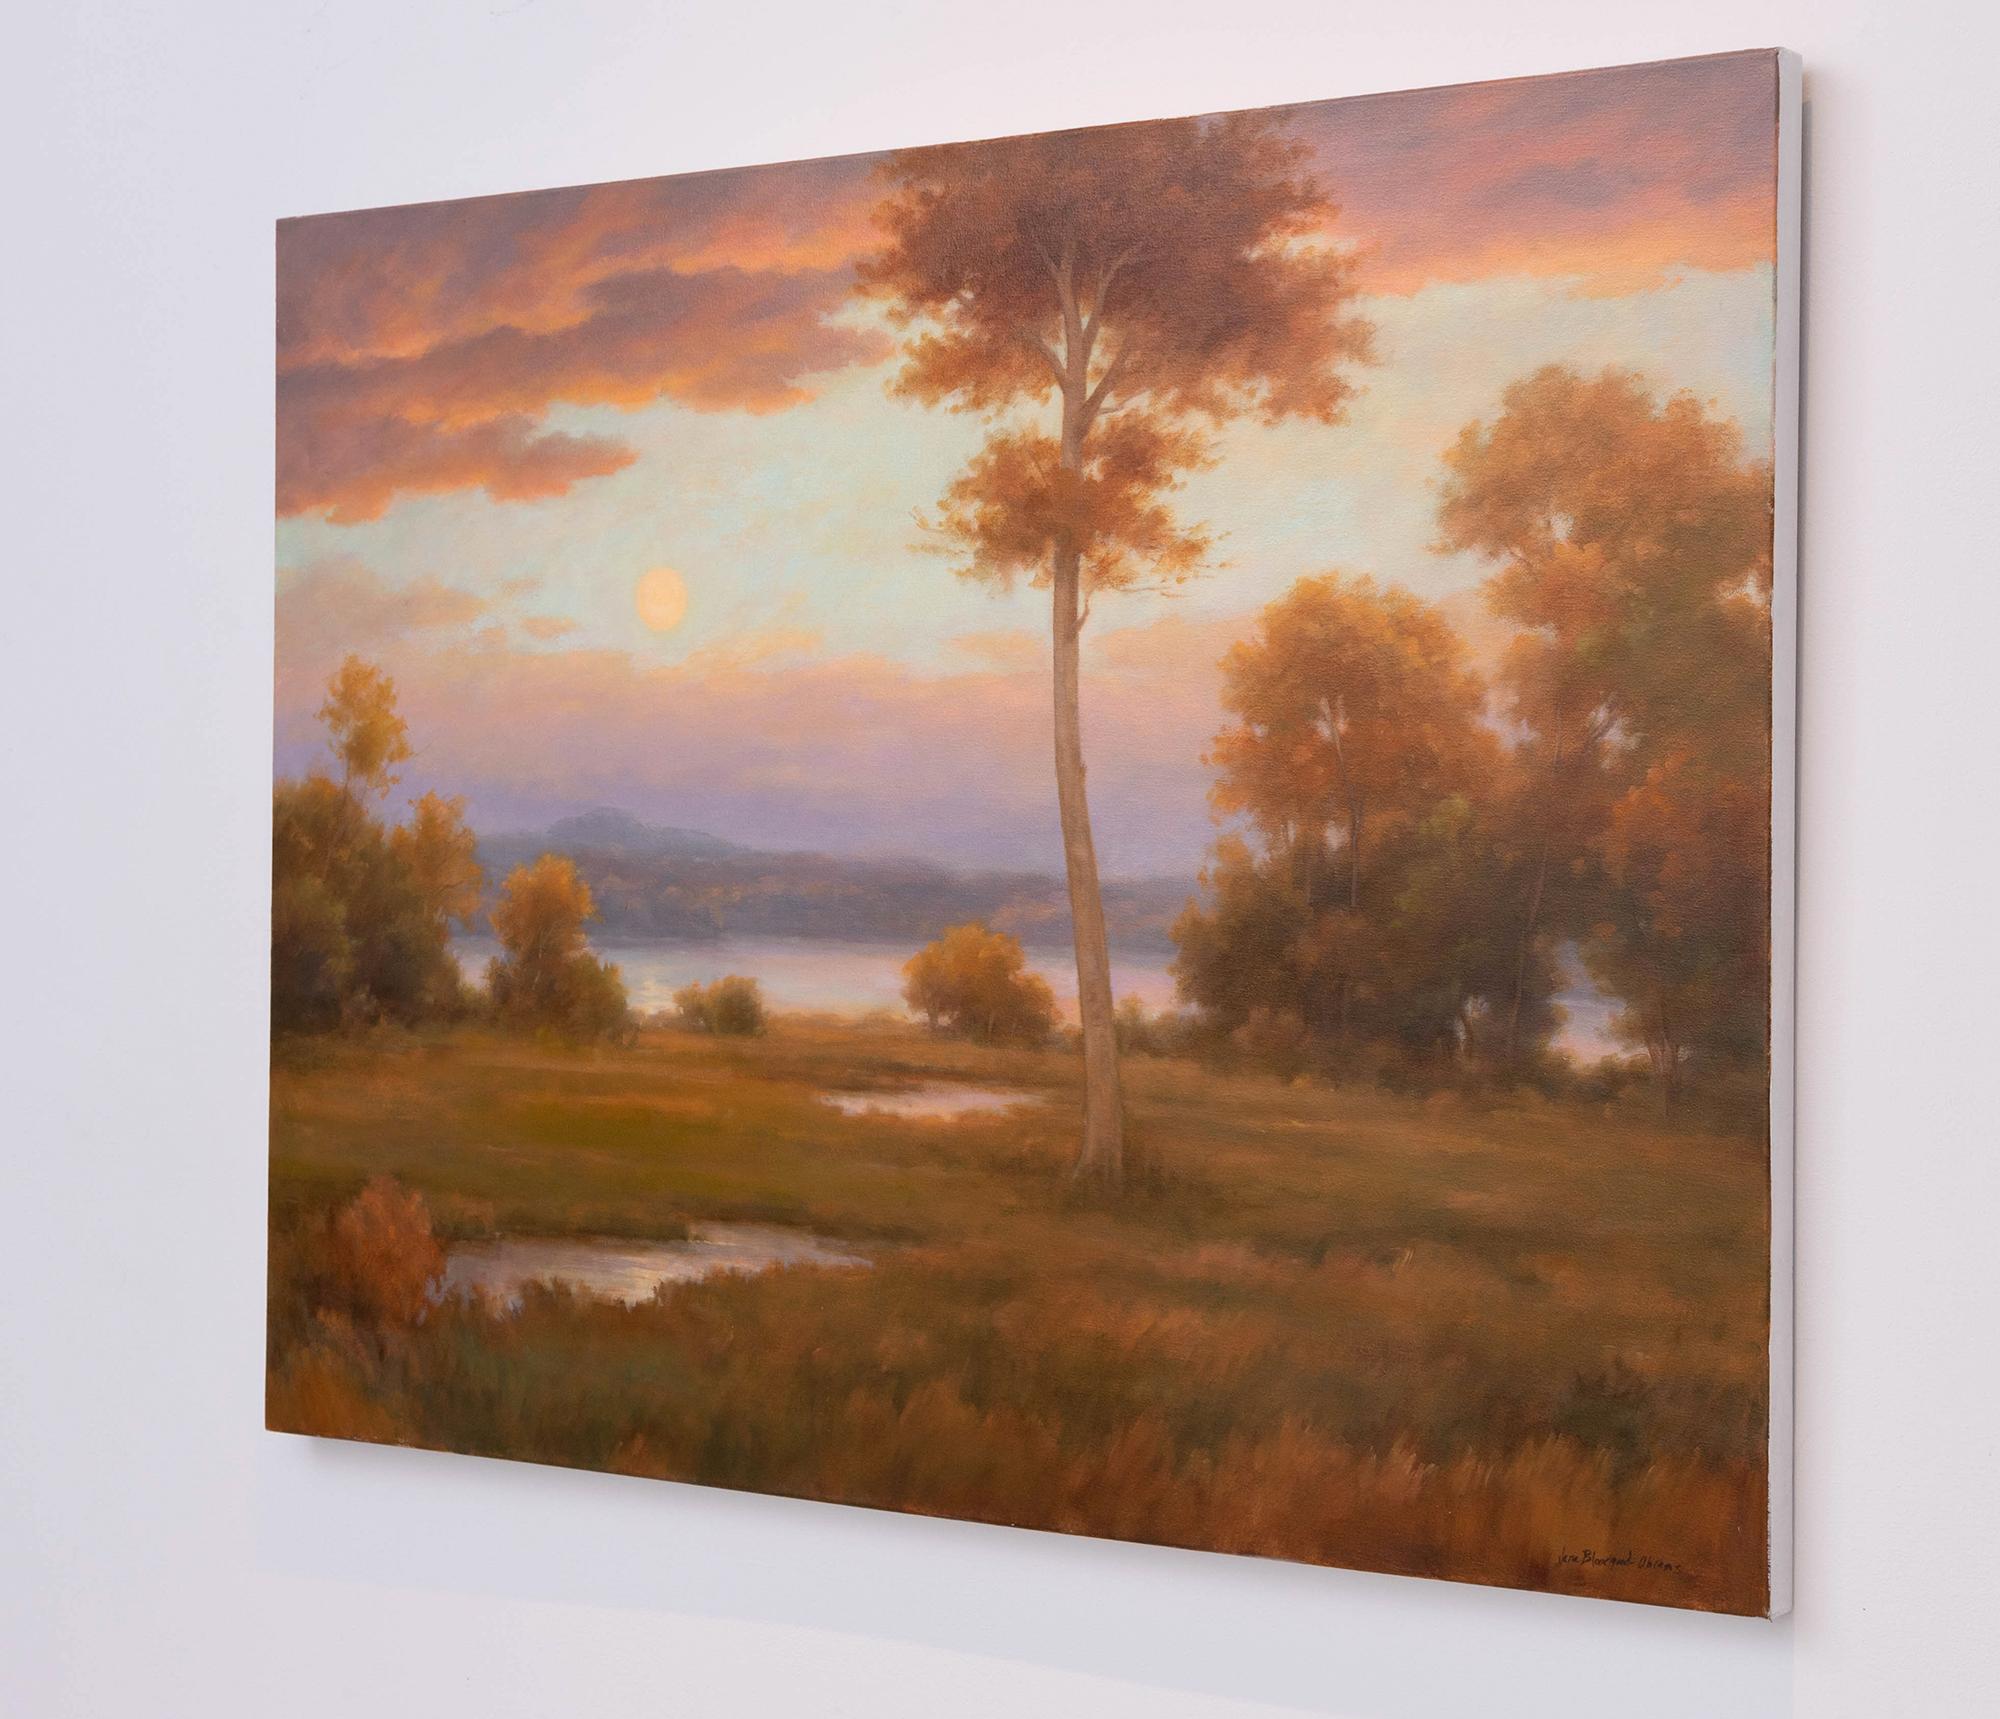 Modern Luminist, Hudson River School Landschaftsgemälde auf Leinwand eines Flussufers, reichhaltig gefärbtes Laub und Mond am Horizont
